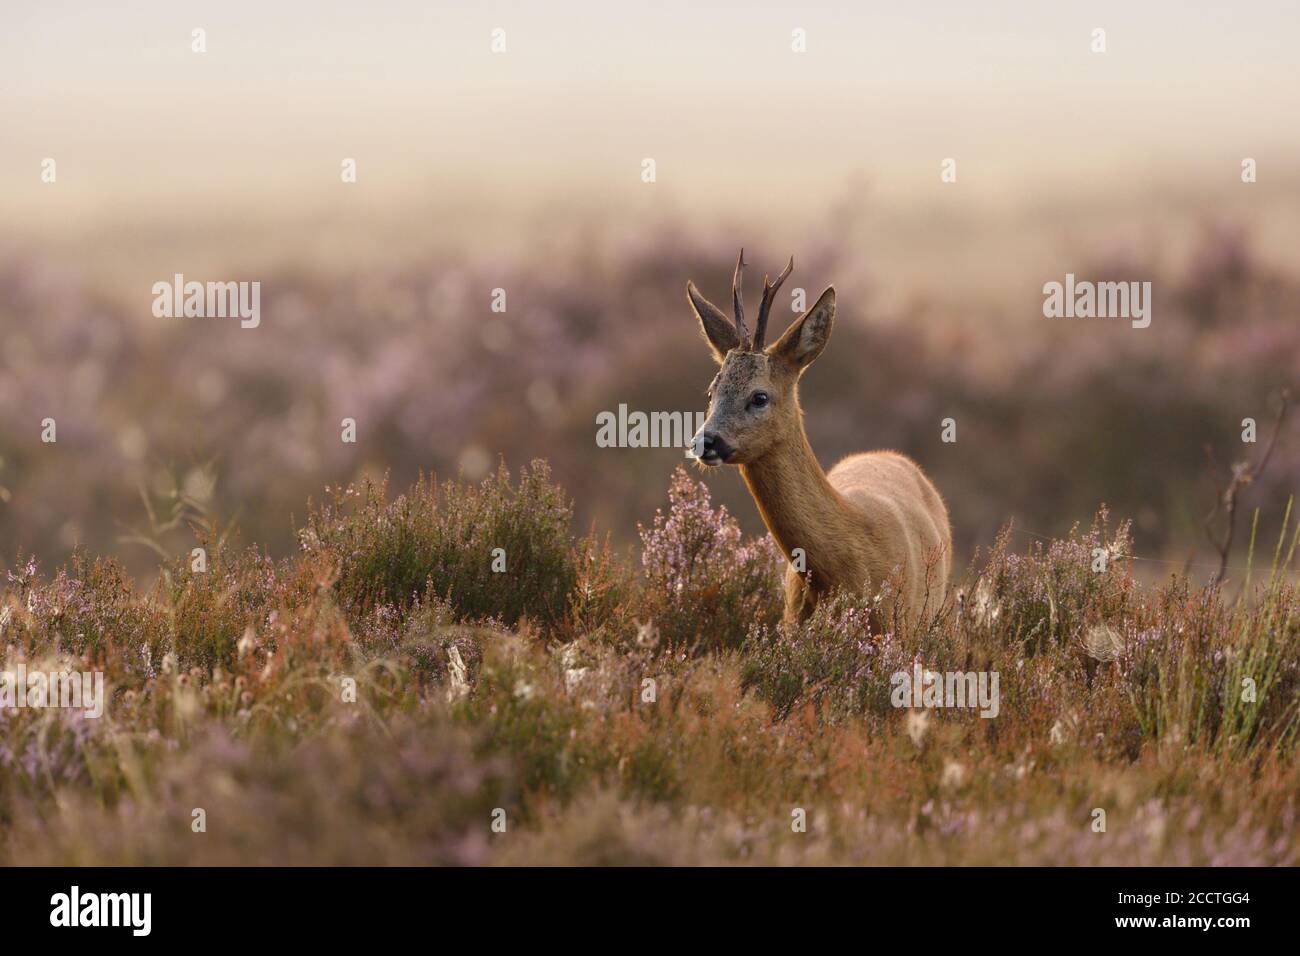 Roe Deer ( Capreolus capreolus ), buck, standing, feeding in a field of of violett blooming heather, in moody atmosphere, wildlife, Europe. Stock Photo